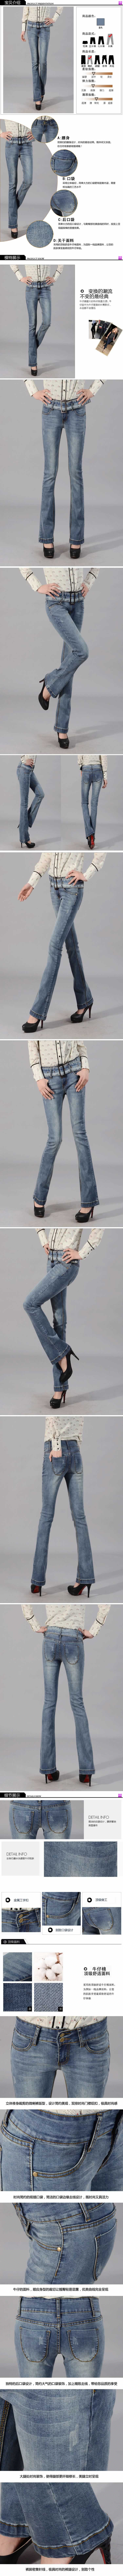 时尚紧身牛仔裤描述模板